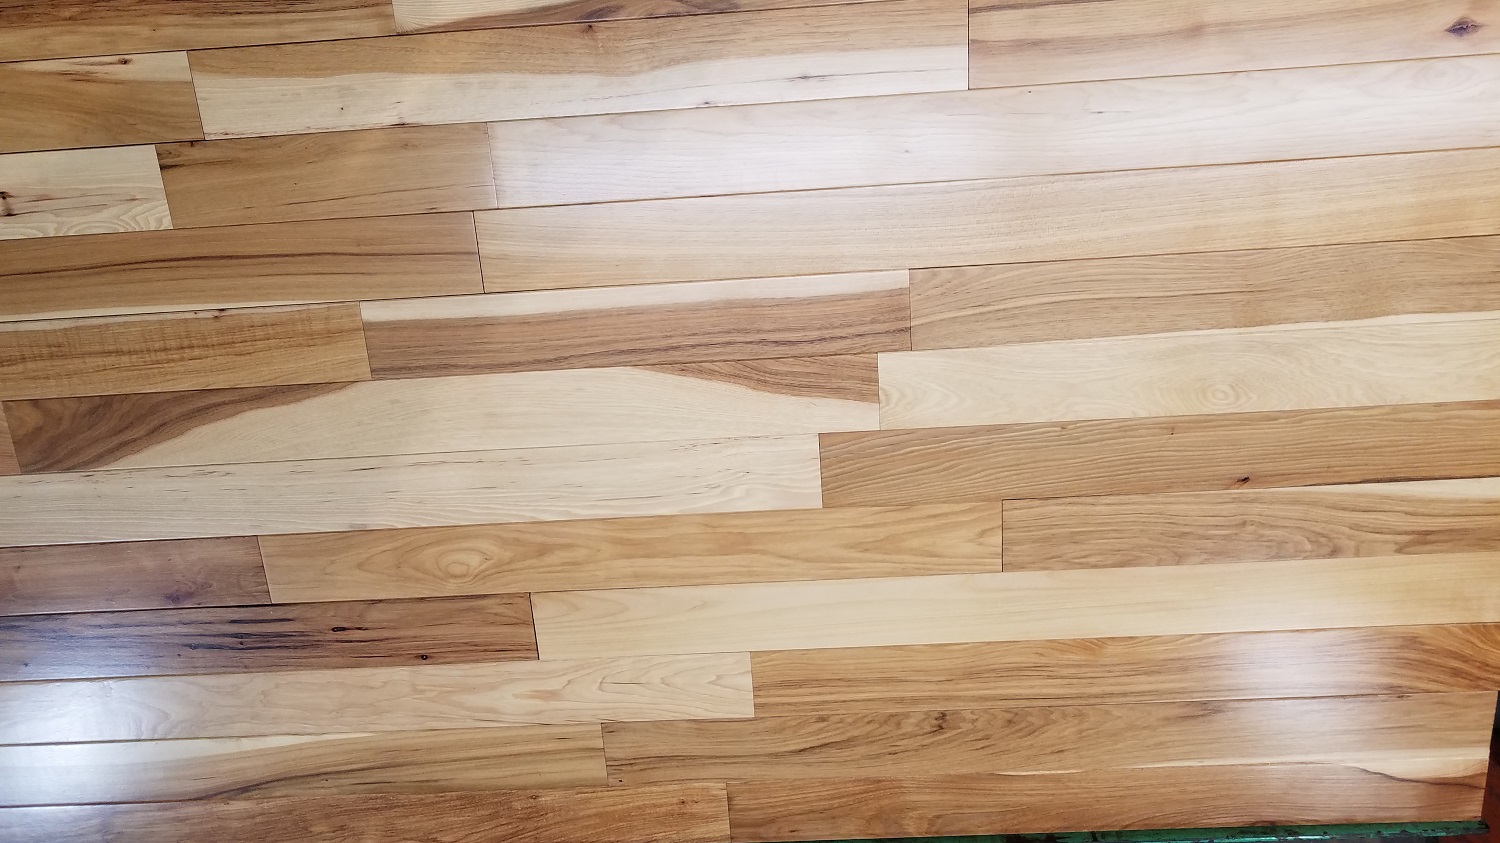 Turman Hardwood Flooring, Turman Hardwood Flooring